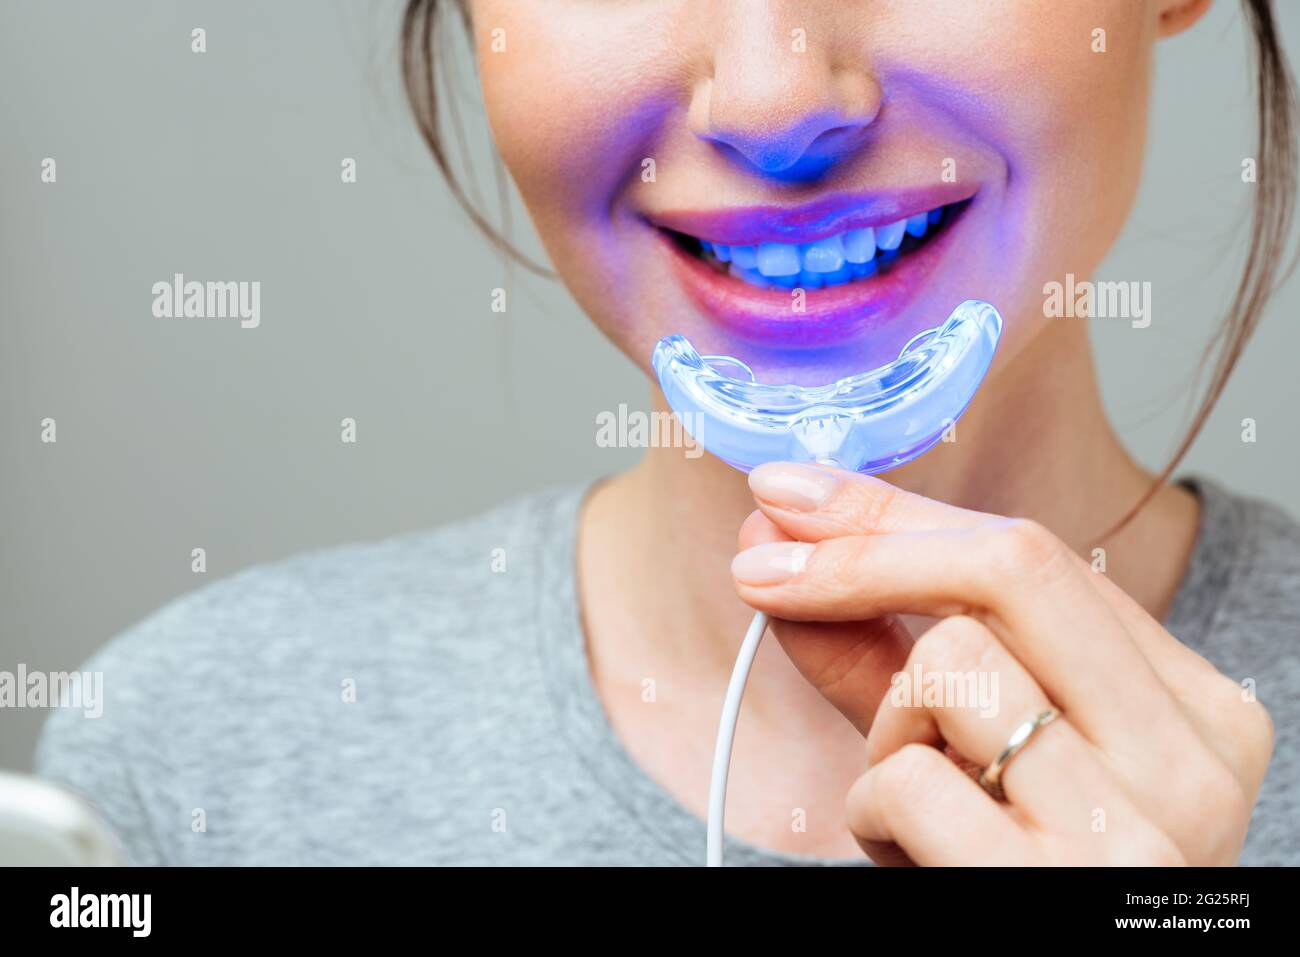 lv light for braces